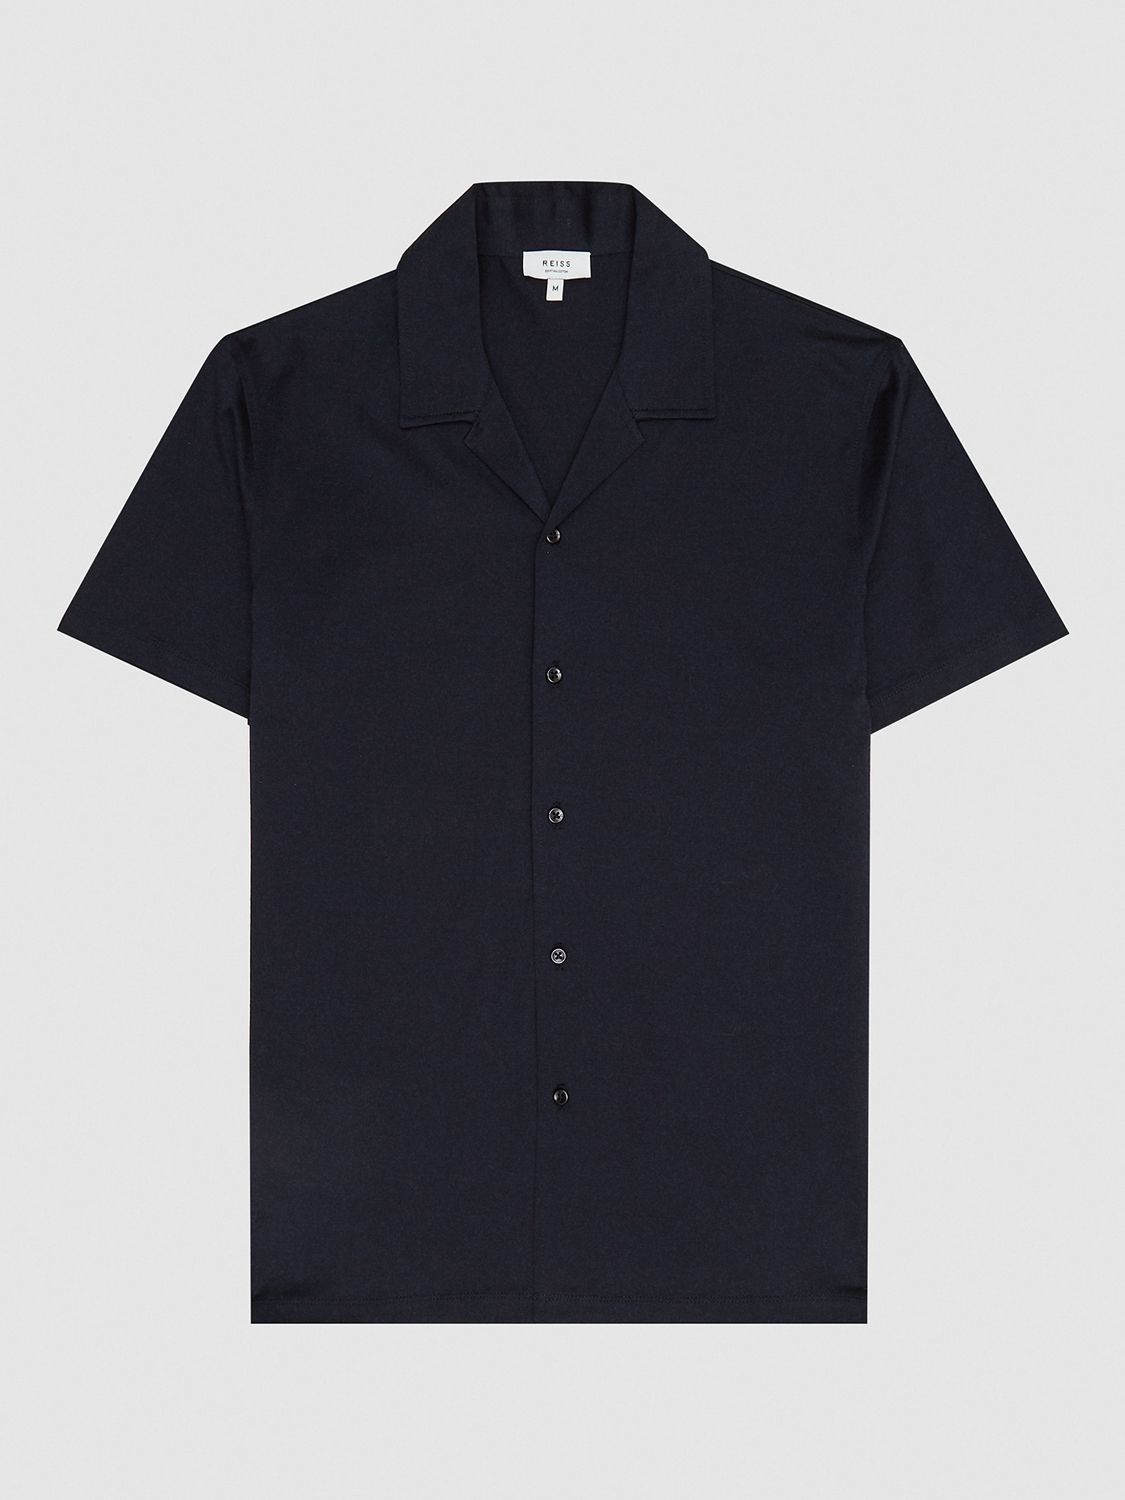 Reiss Caspa Cuban Collar Short Sleeve Shirt, Navy, XS